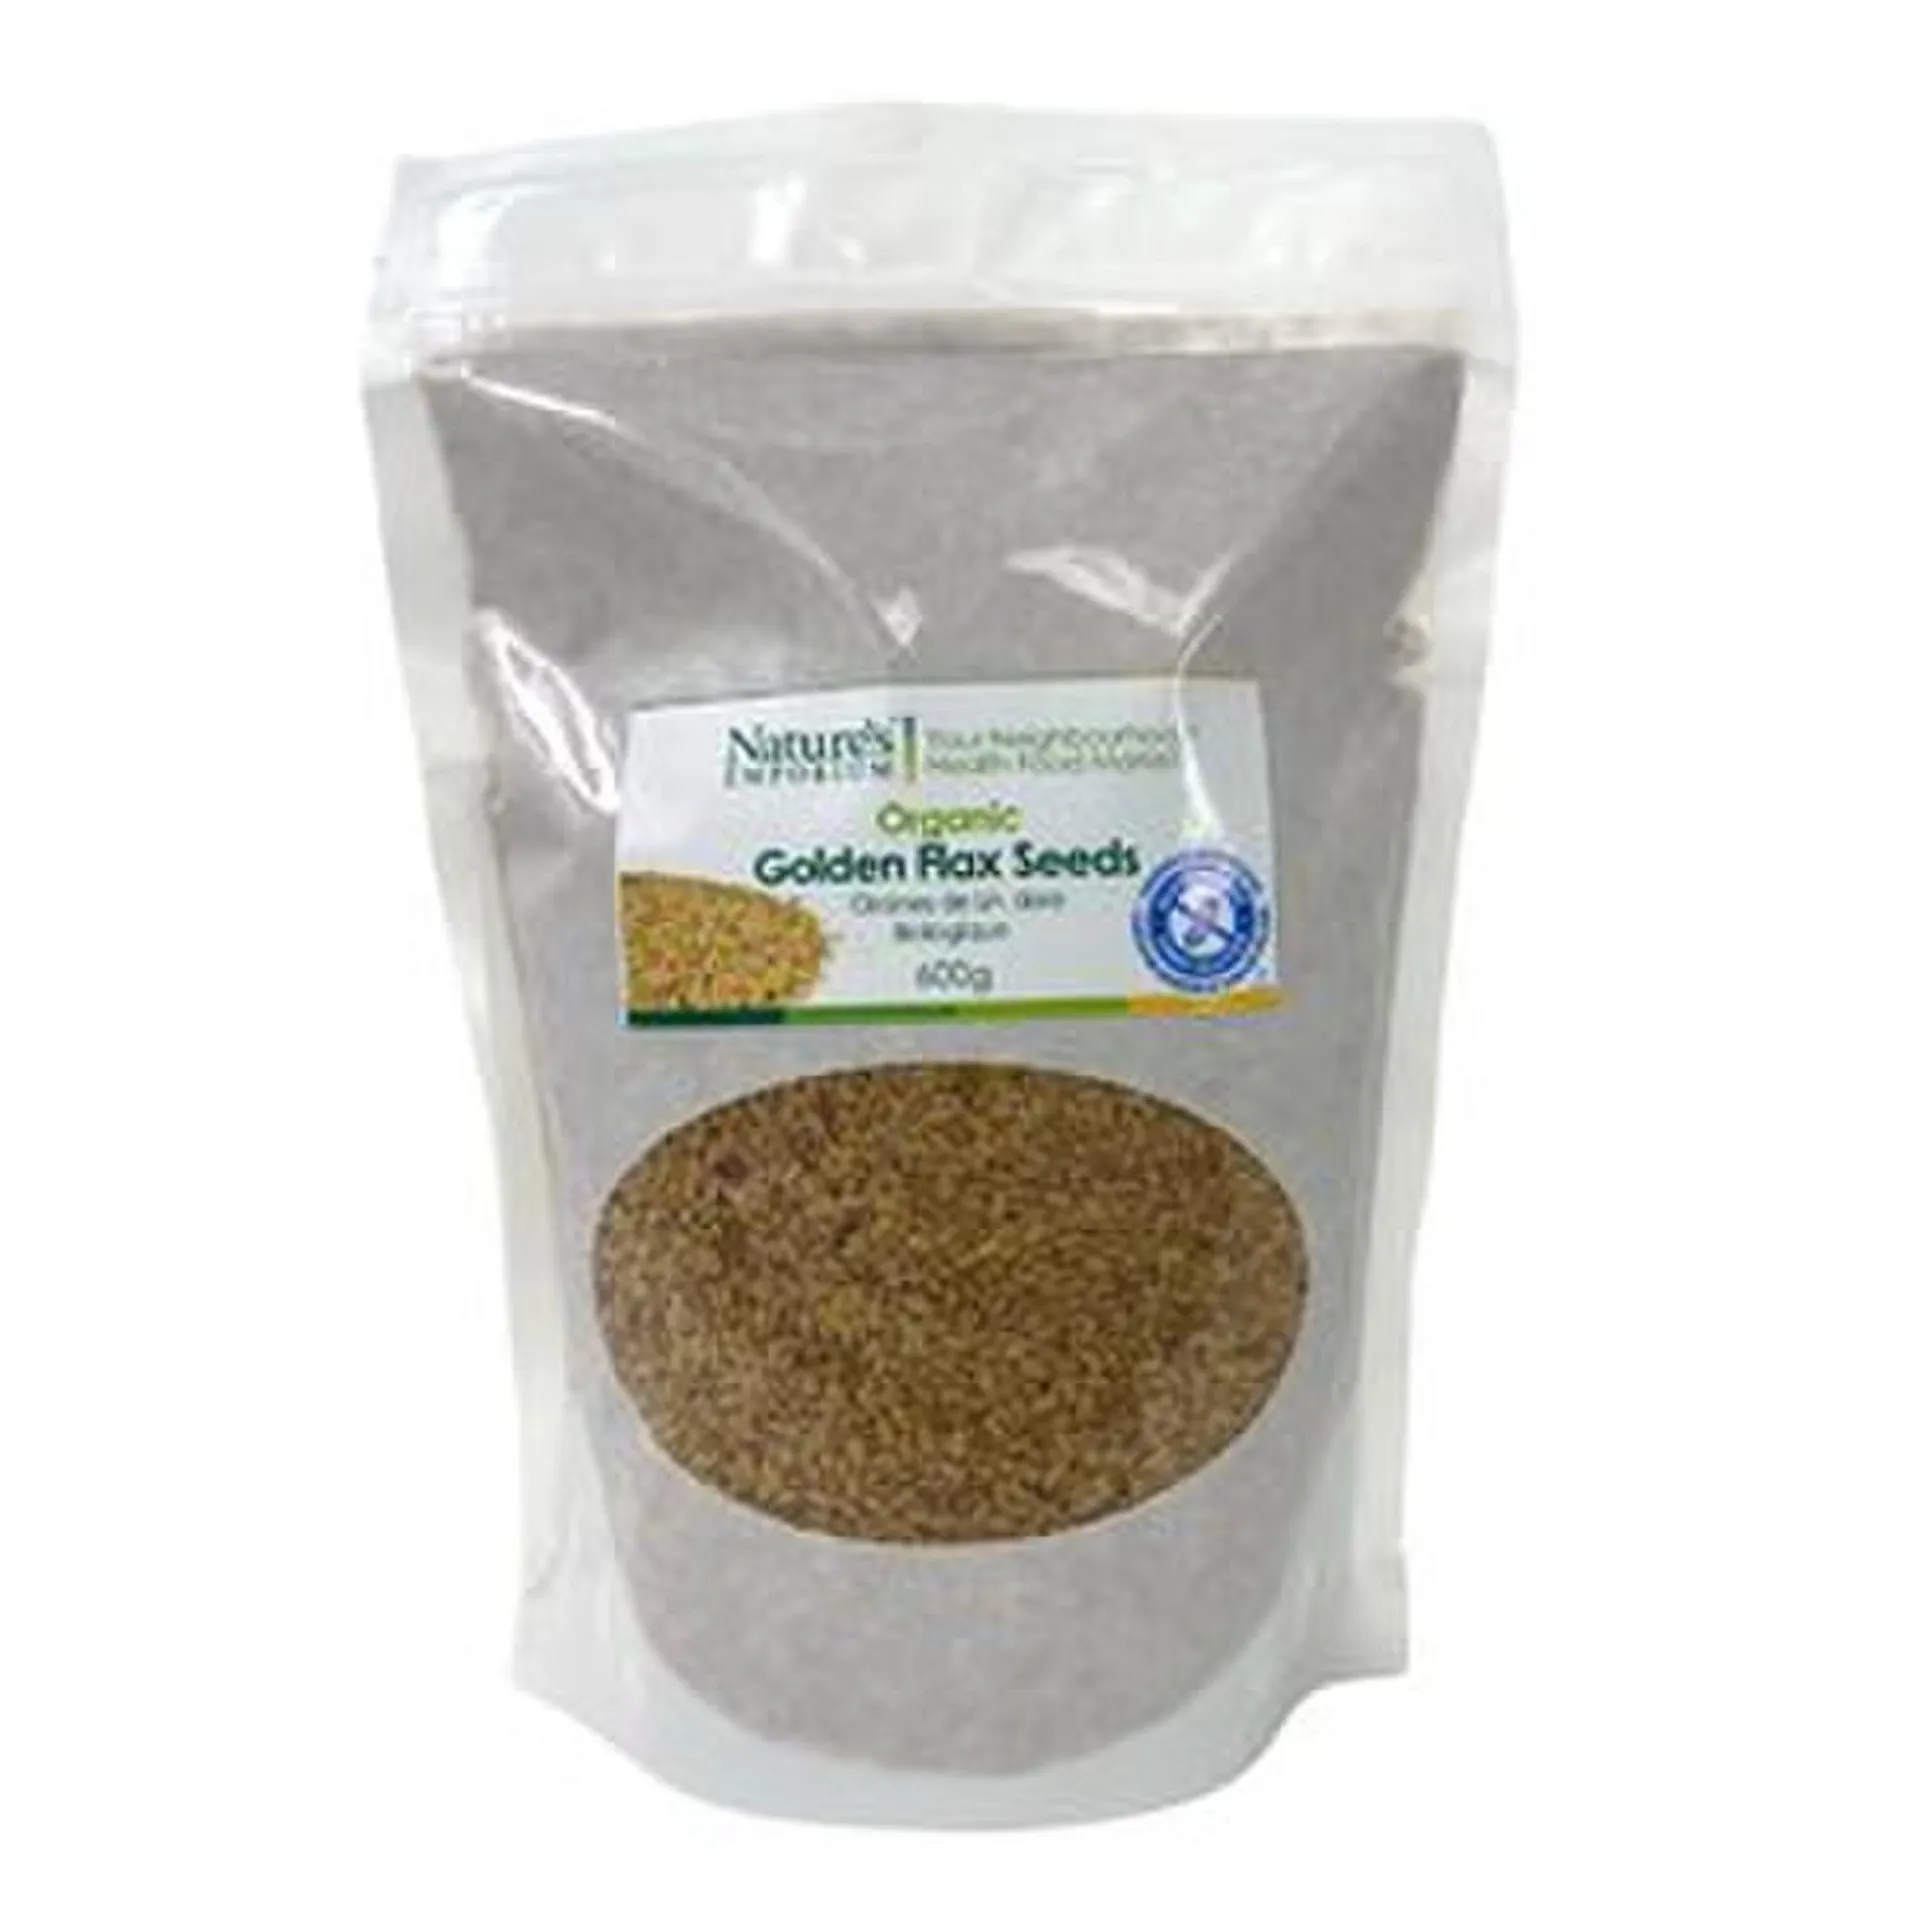 Always Organic Flax Seeds Golden Org 600 g